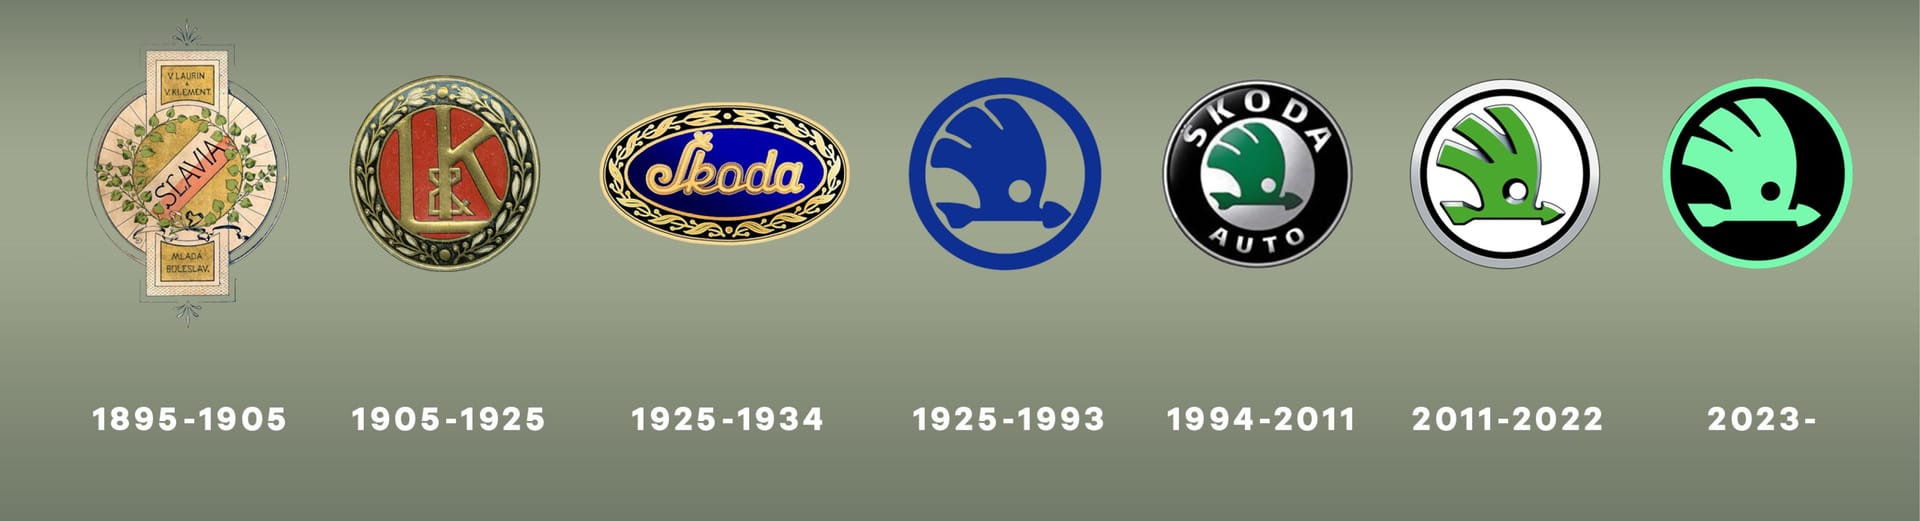 Veränderungen: So hat sich das Skoda-Logo entwickelt.